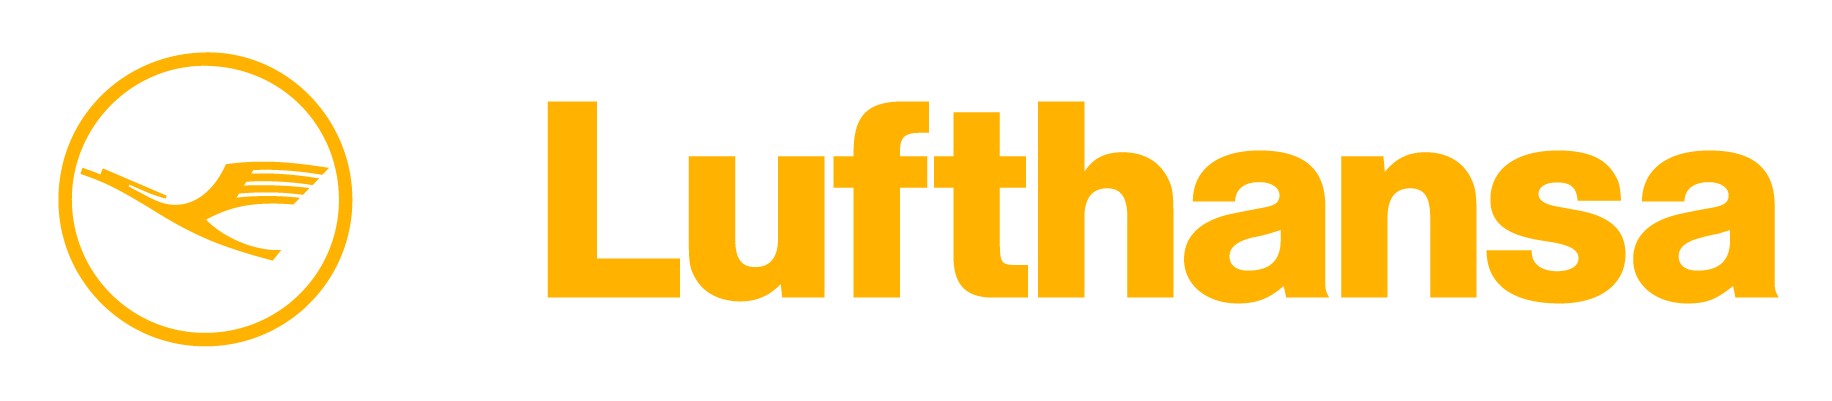 lufthansa-airline-logo-1.jpg